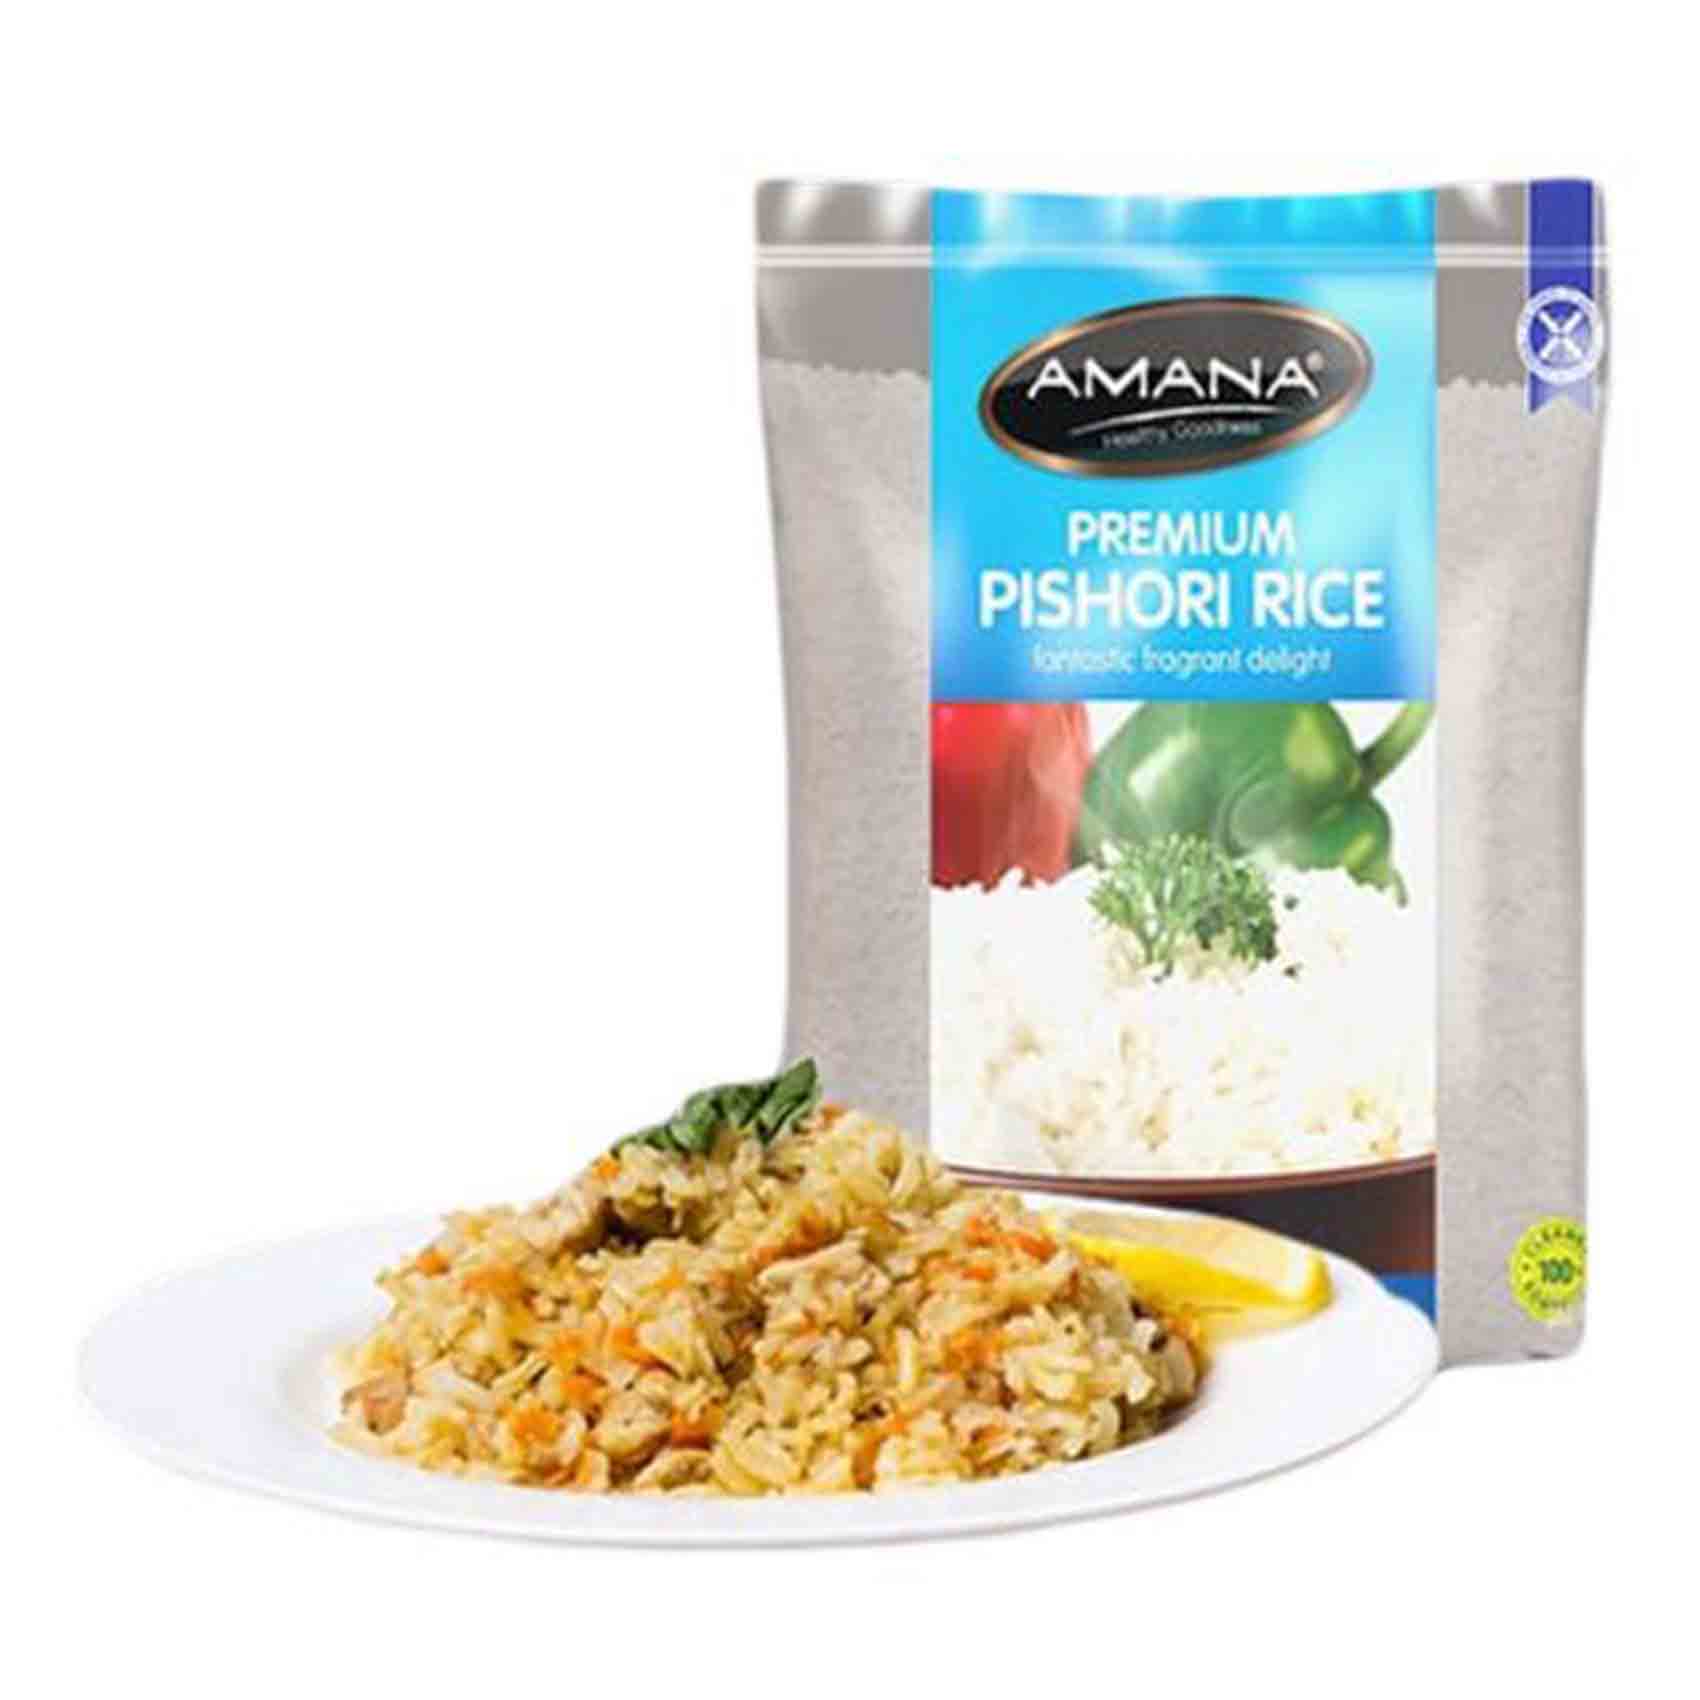 Amana Premium Pishori Rice 1Kg